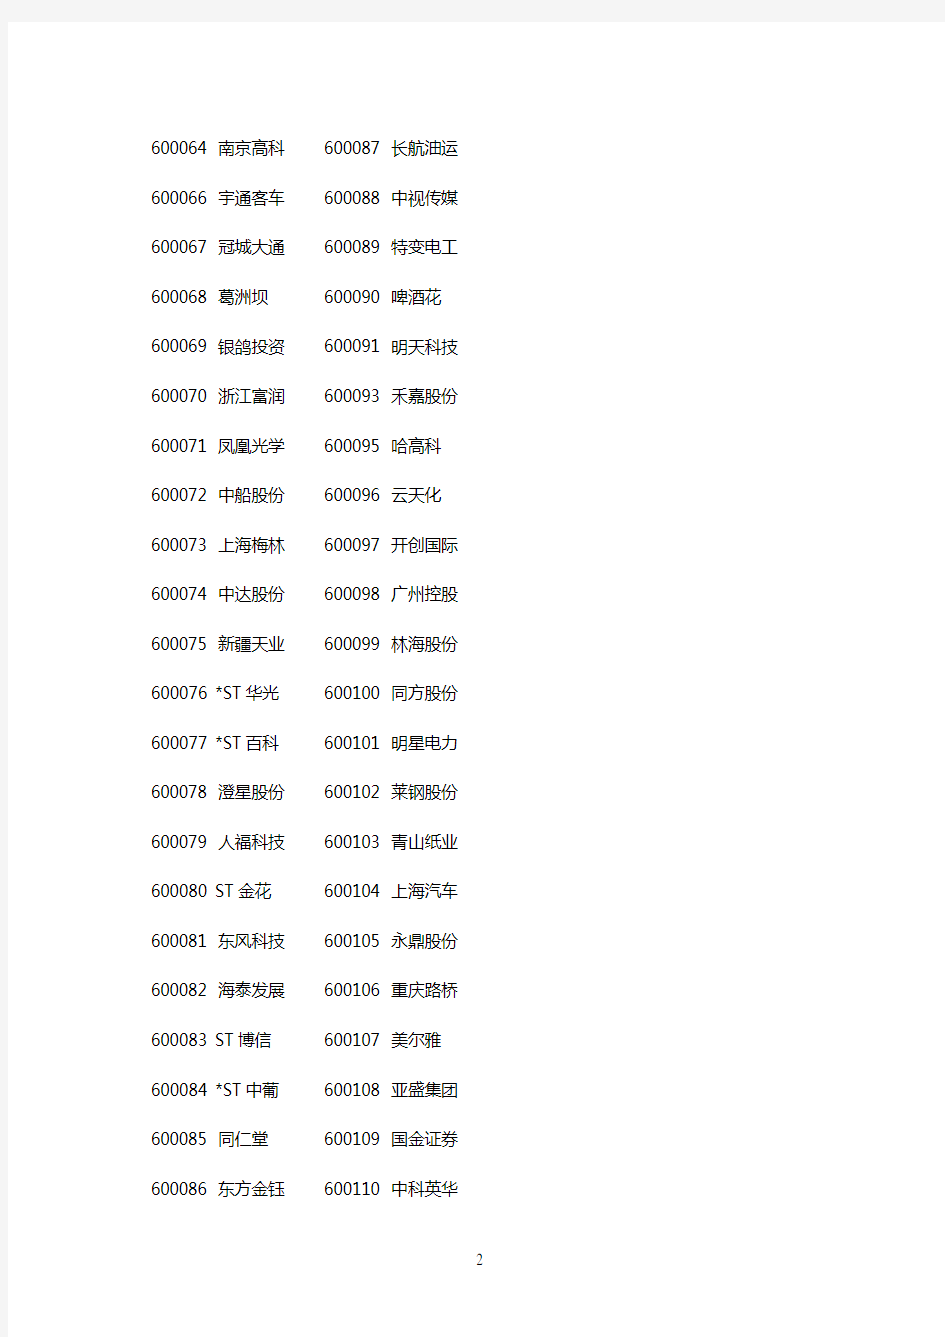 上海证券交易所股票代码及名称